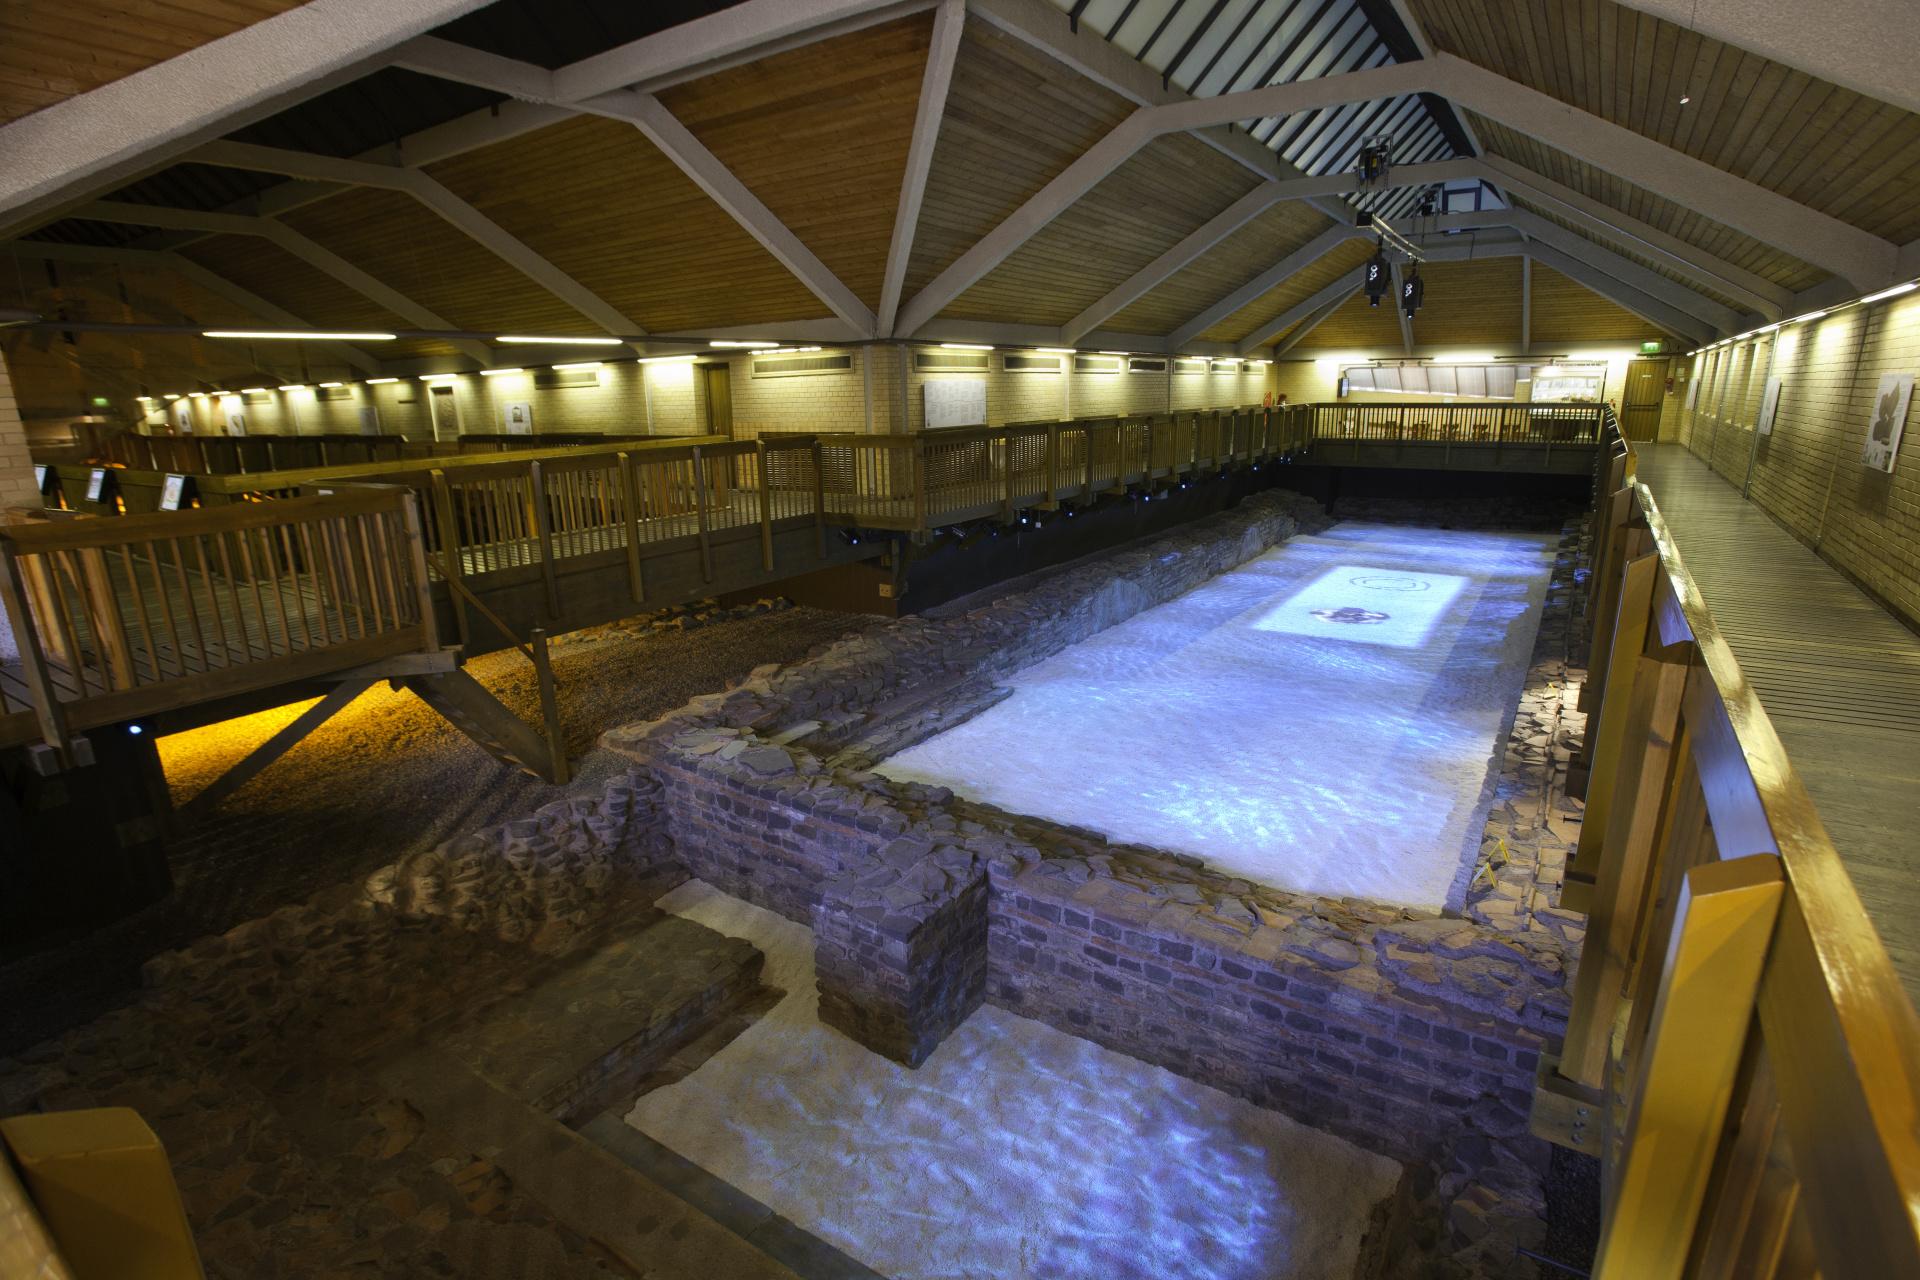 Baddonau Rhufeinig Caerllion/Caerleon Roman Baths view of the natatio